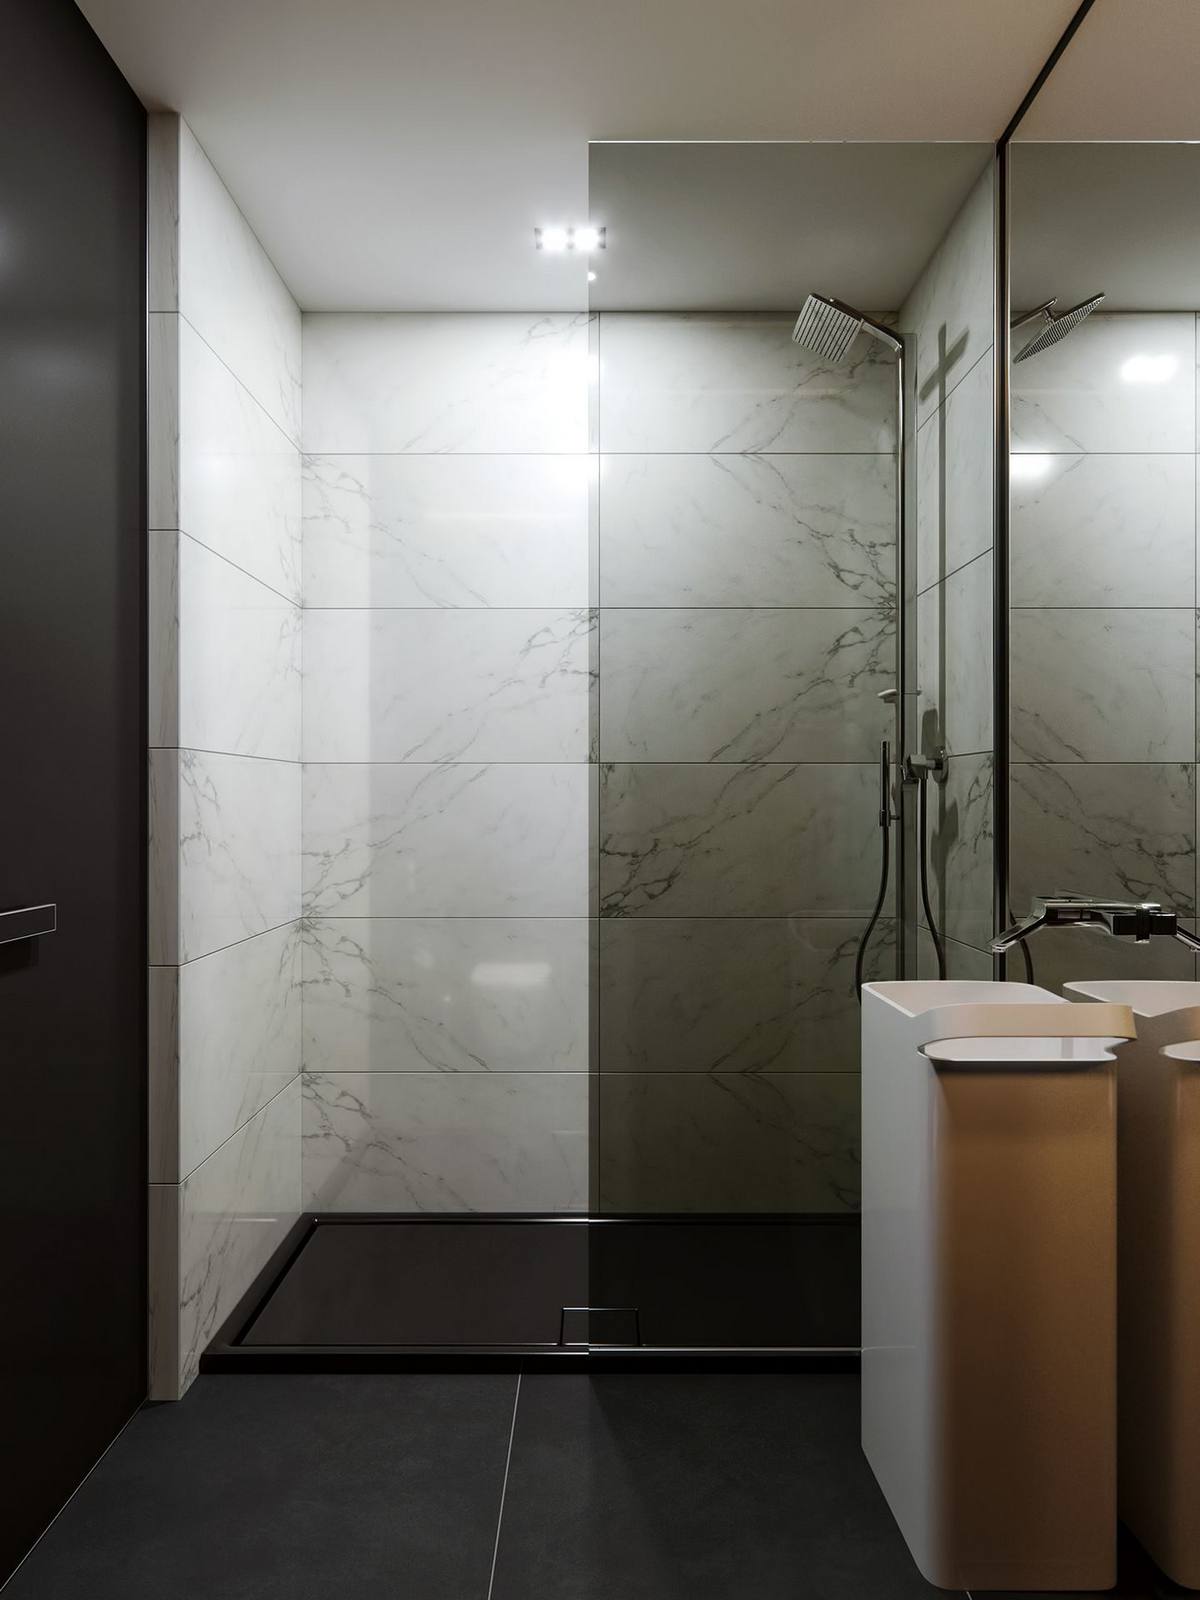 Mặc dù cũng sử dụng vật liệu đá hoa cương để trang trí nhưng tại phòng tắm của căn hộ có sự thay đổi để tạo khác biệt so với phòng khách, đó chính là sàn nhà lát đá màu đen còn đá granite trắng sử dụng để ốp tường cho vẻ đẹp tương phản ấn tượng.